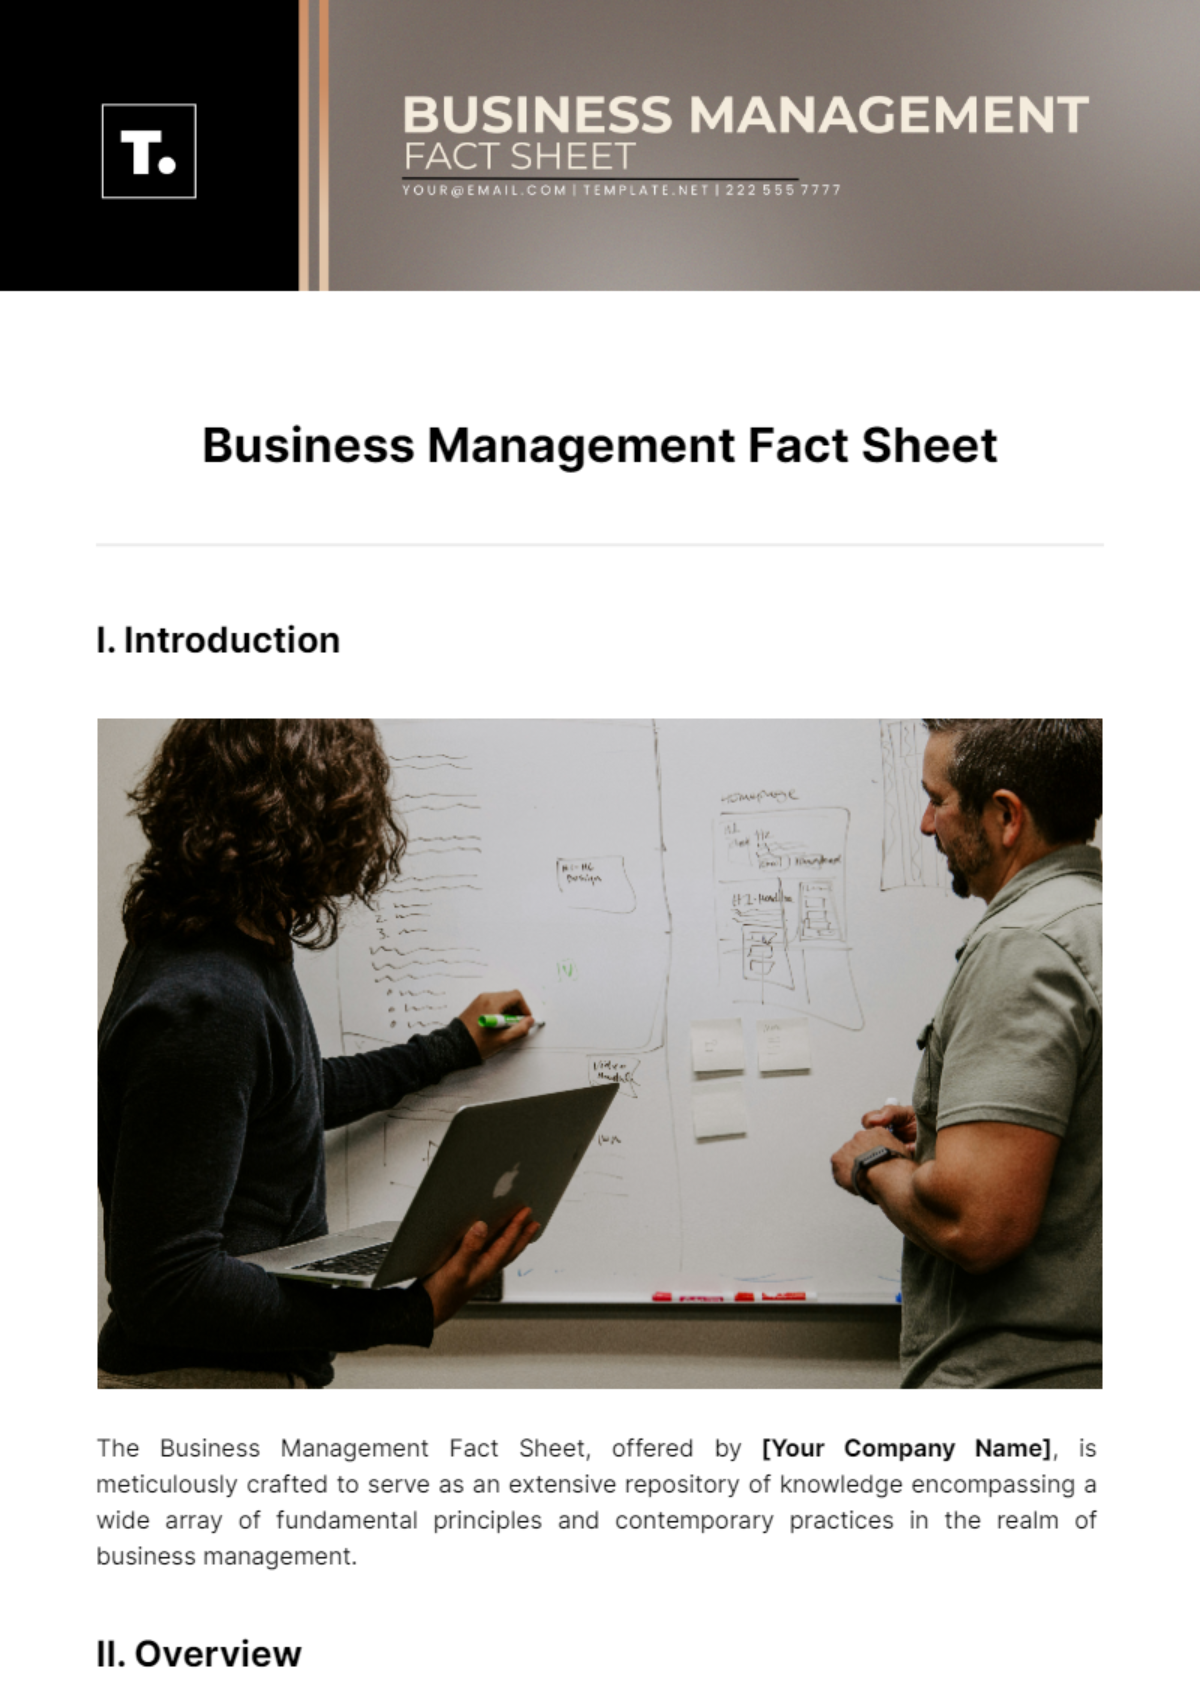 Business Management Fact Sheet Template